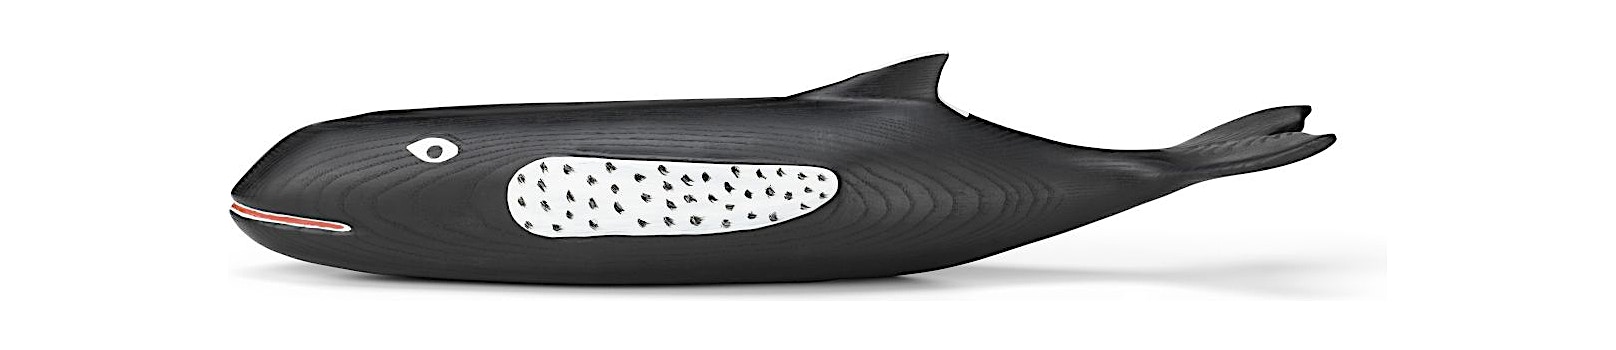 Vitra - Eames House Whale - 1